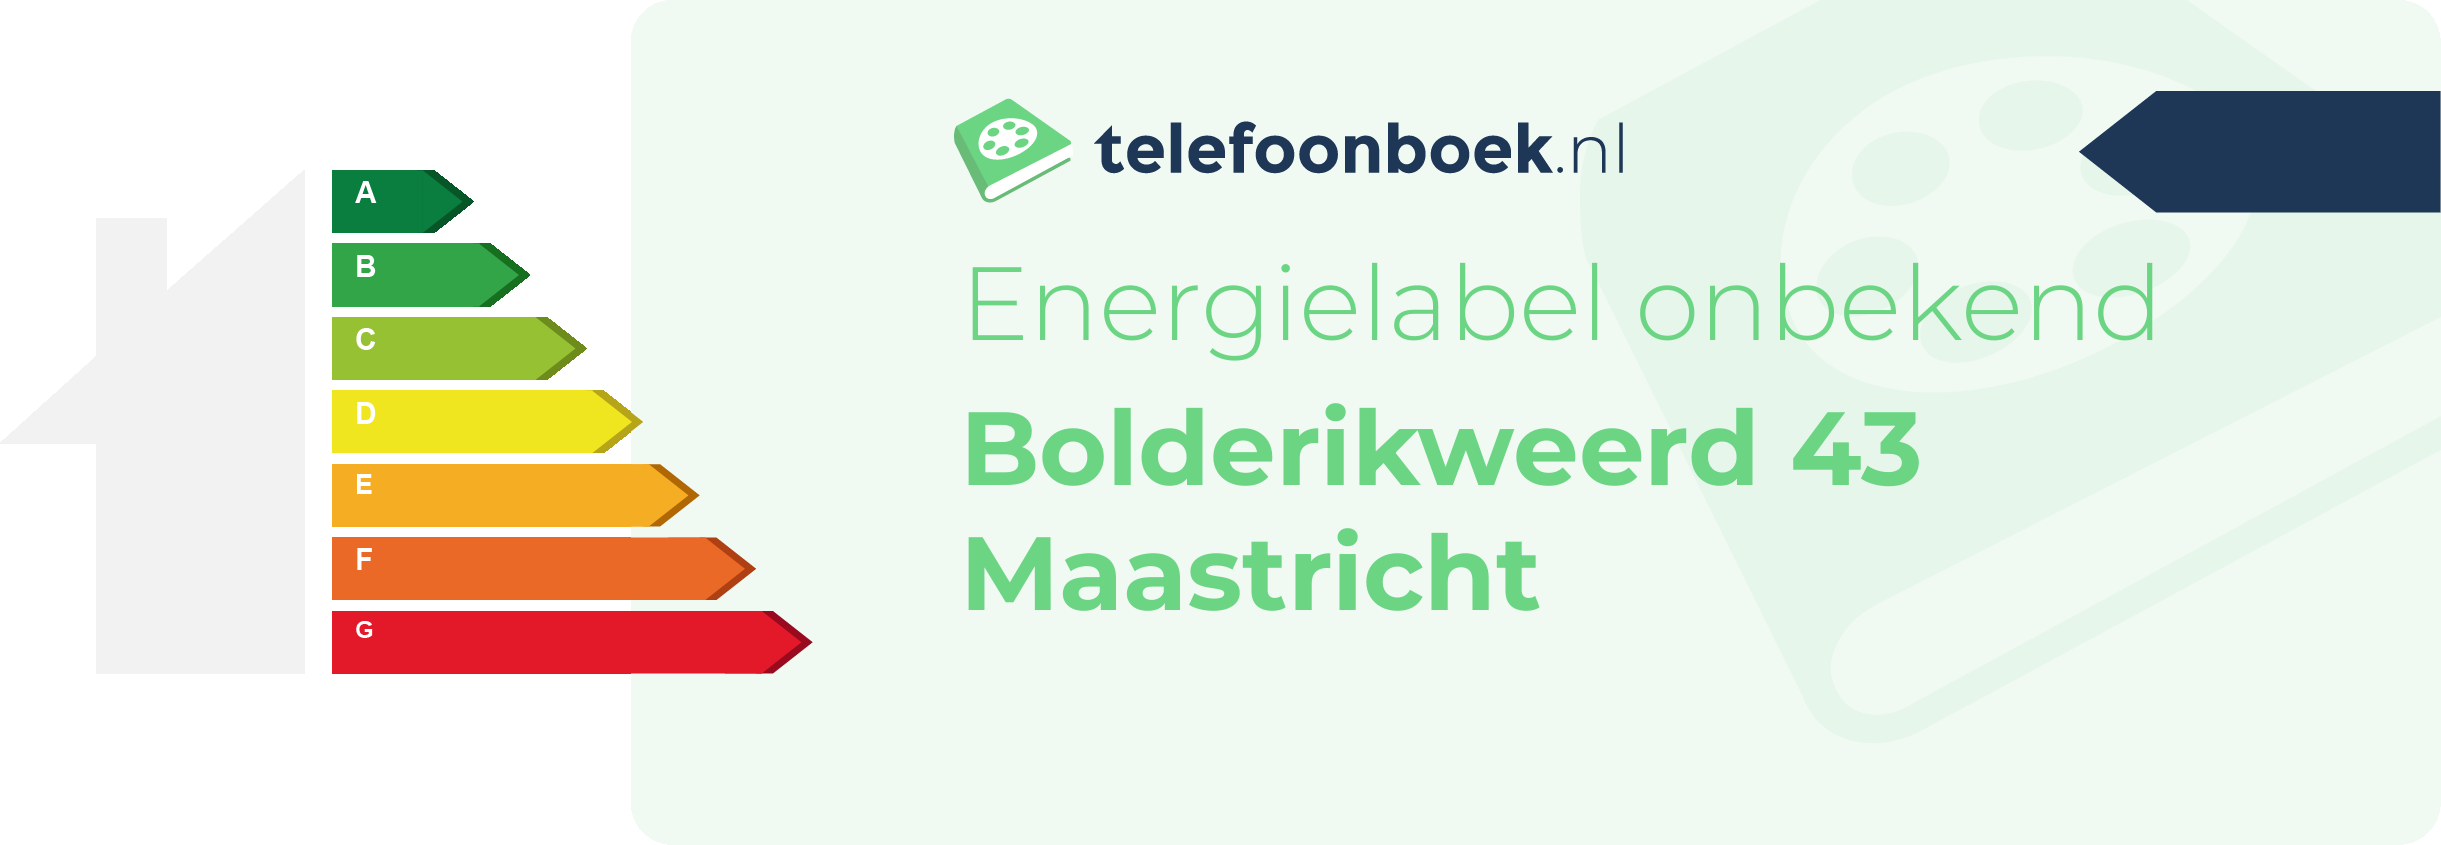 Energielabel Bolderikweerd 43 Maastricht